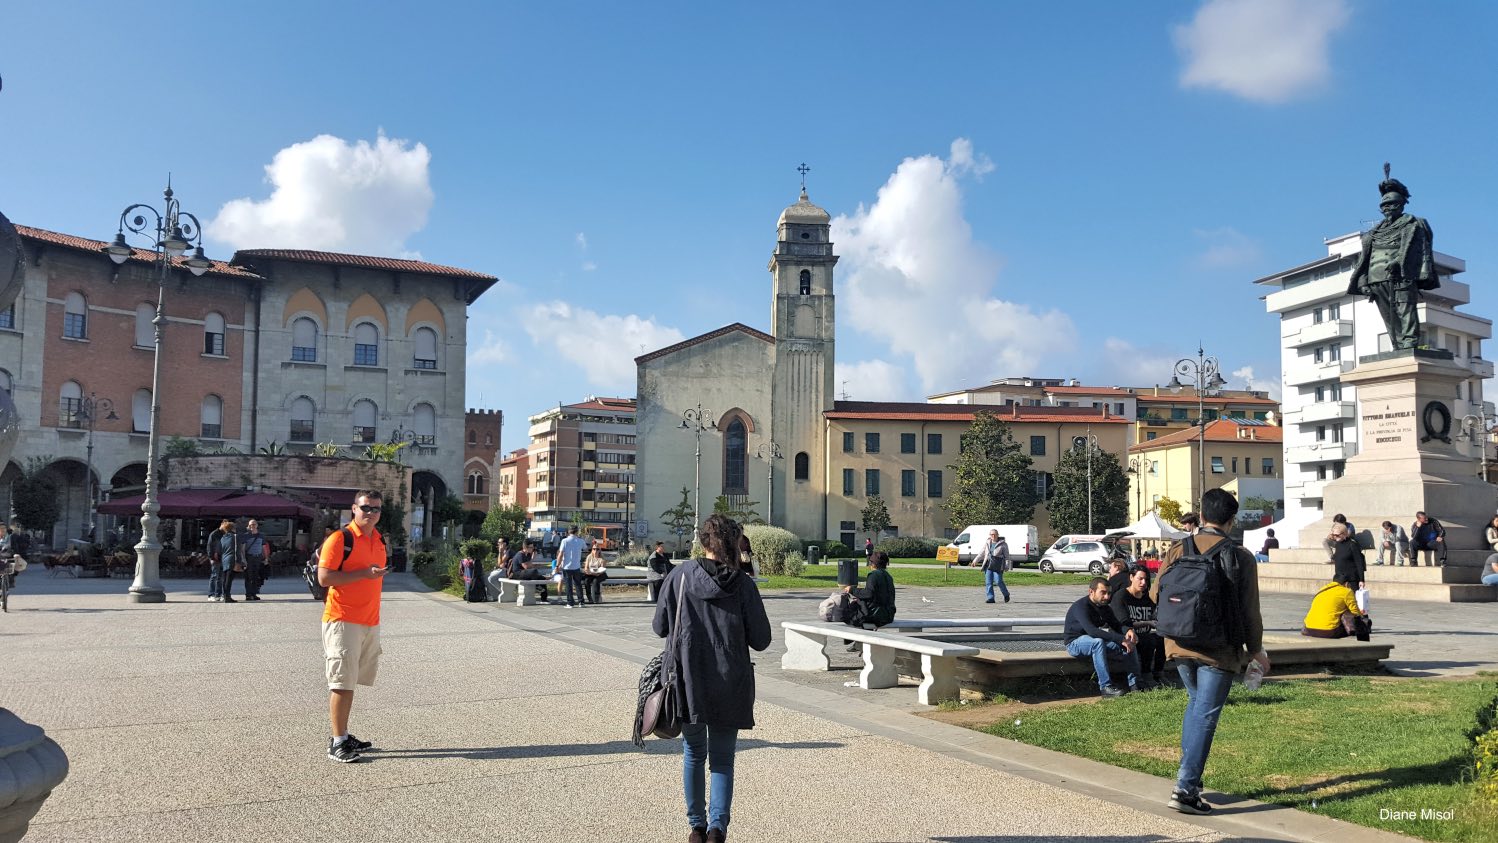 Piazza Vittorio Emanuele in Pisa, Italy